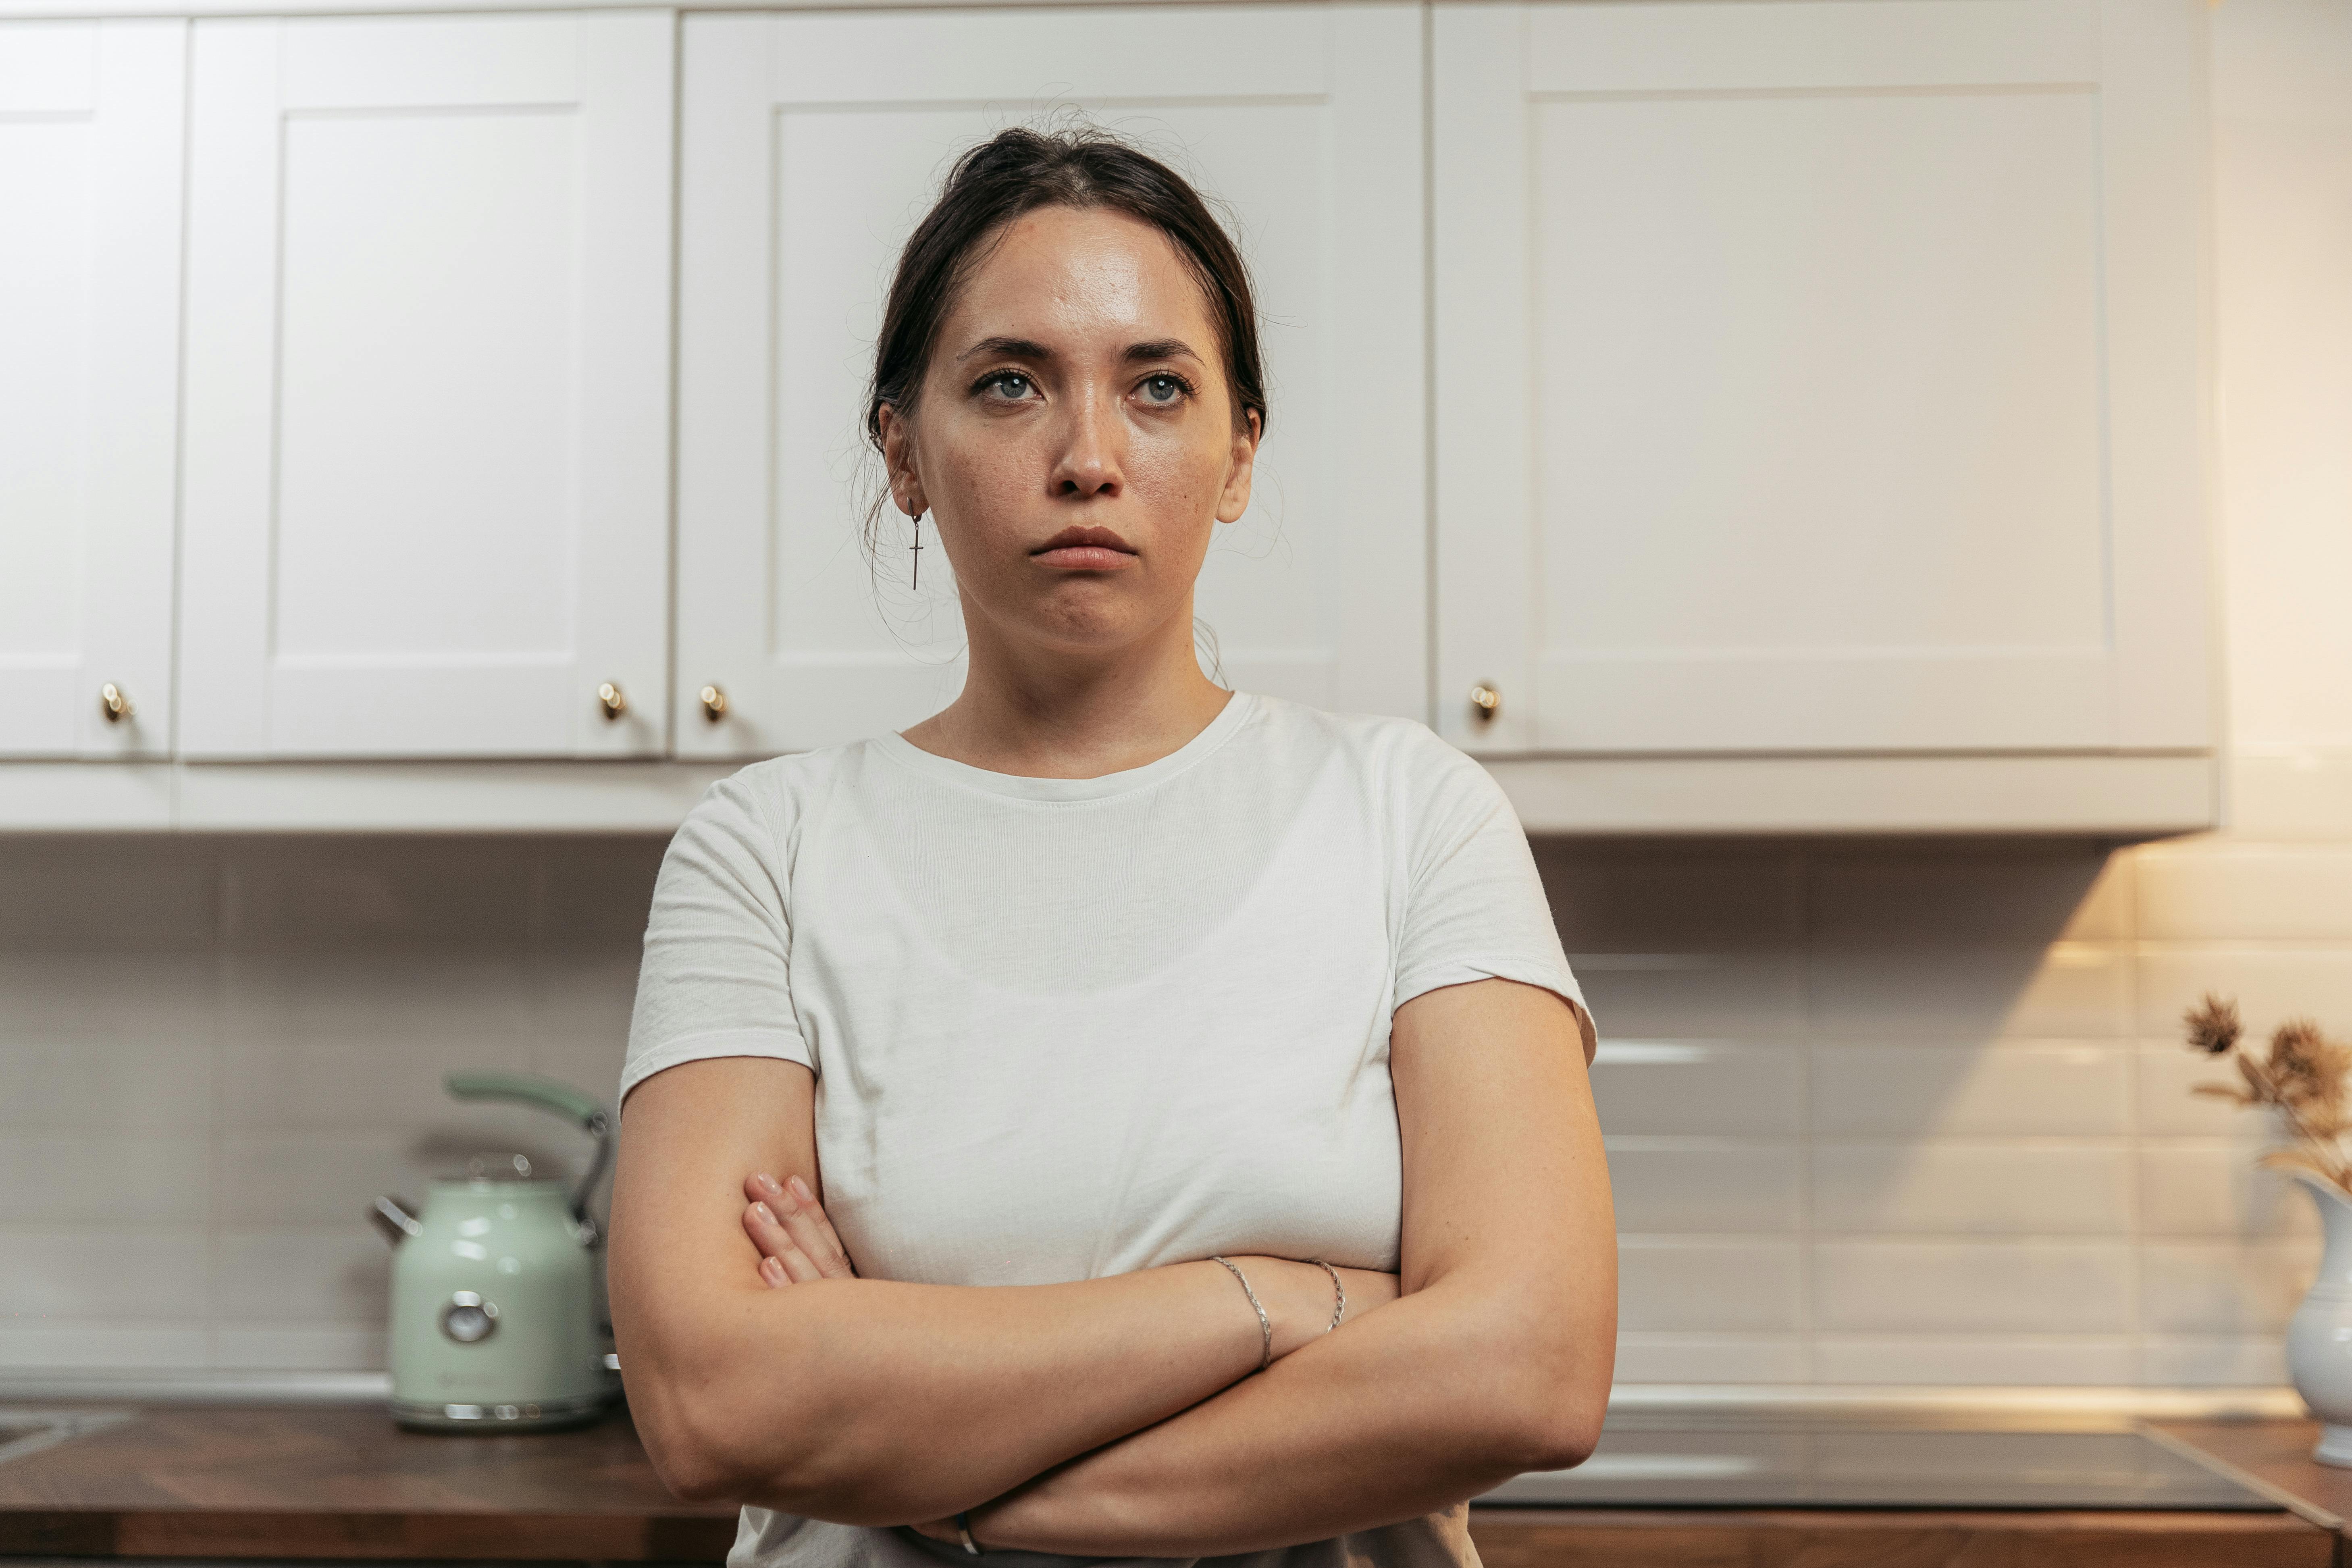 Une femme debout dans la cuisine se sentant contrariée | Source : Pexels